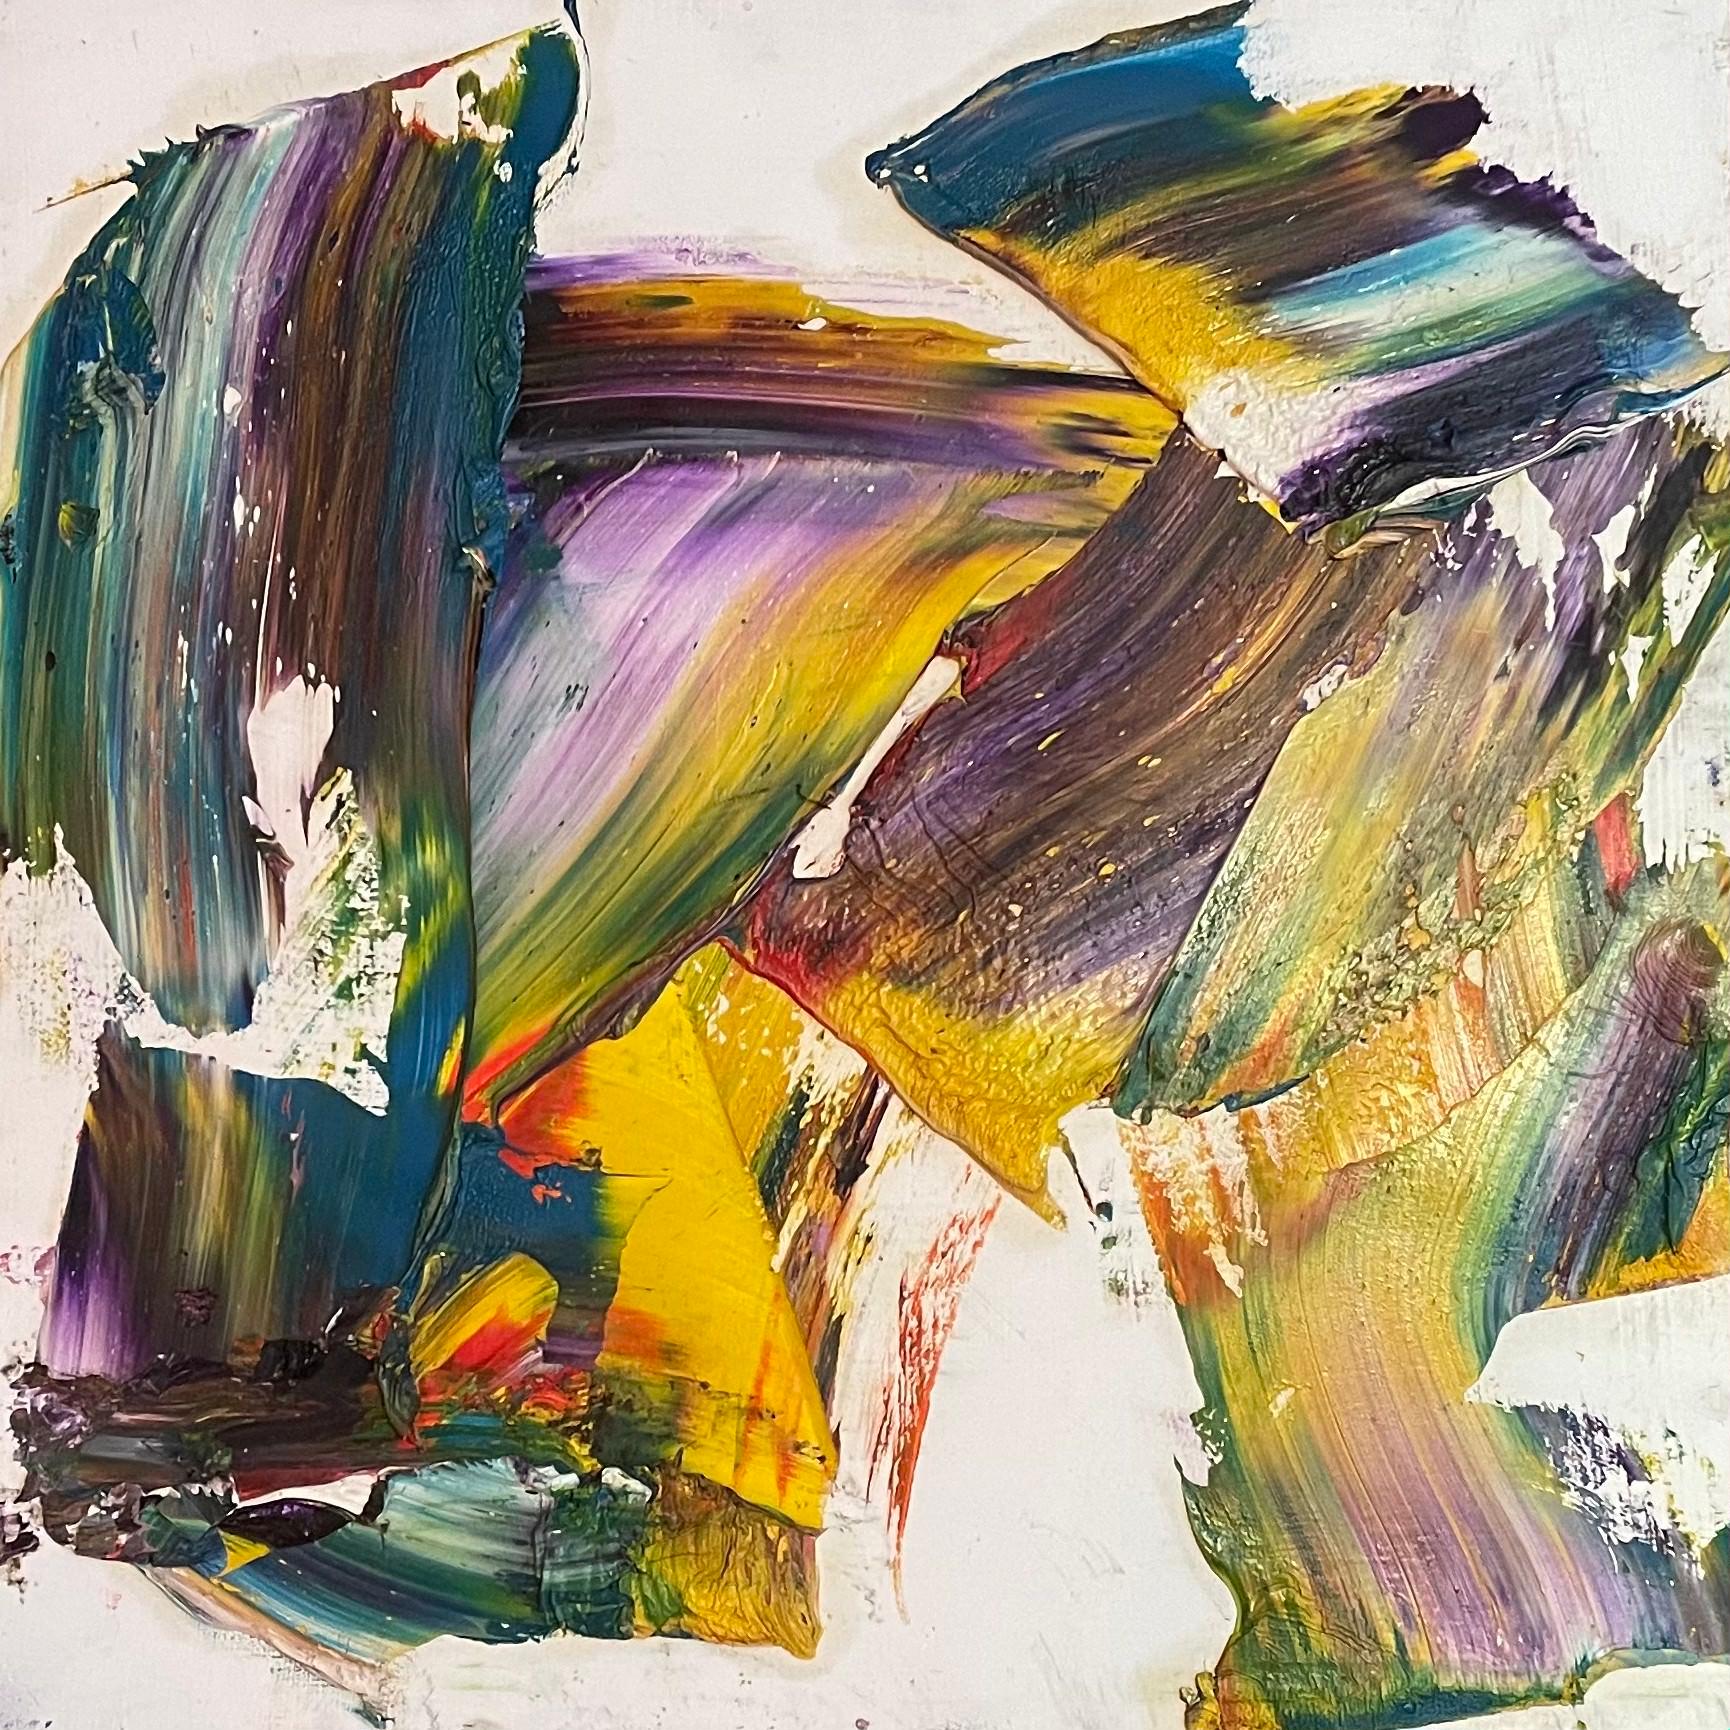 Steven Rehfelds 18,25" x 18,25" großes Werk "Prism" ist eine Sinfonie der Farben, bei der jede Note lebendiger ist als die andere. Die ebenso kühnen wie bedächtigen, strukturierten Pinselstriche scheinen über die Leinwand zu tanzen und strahlen eine